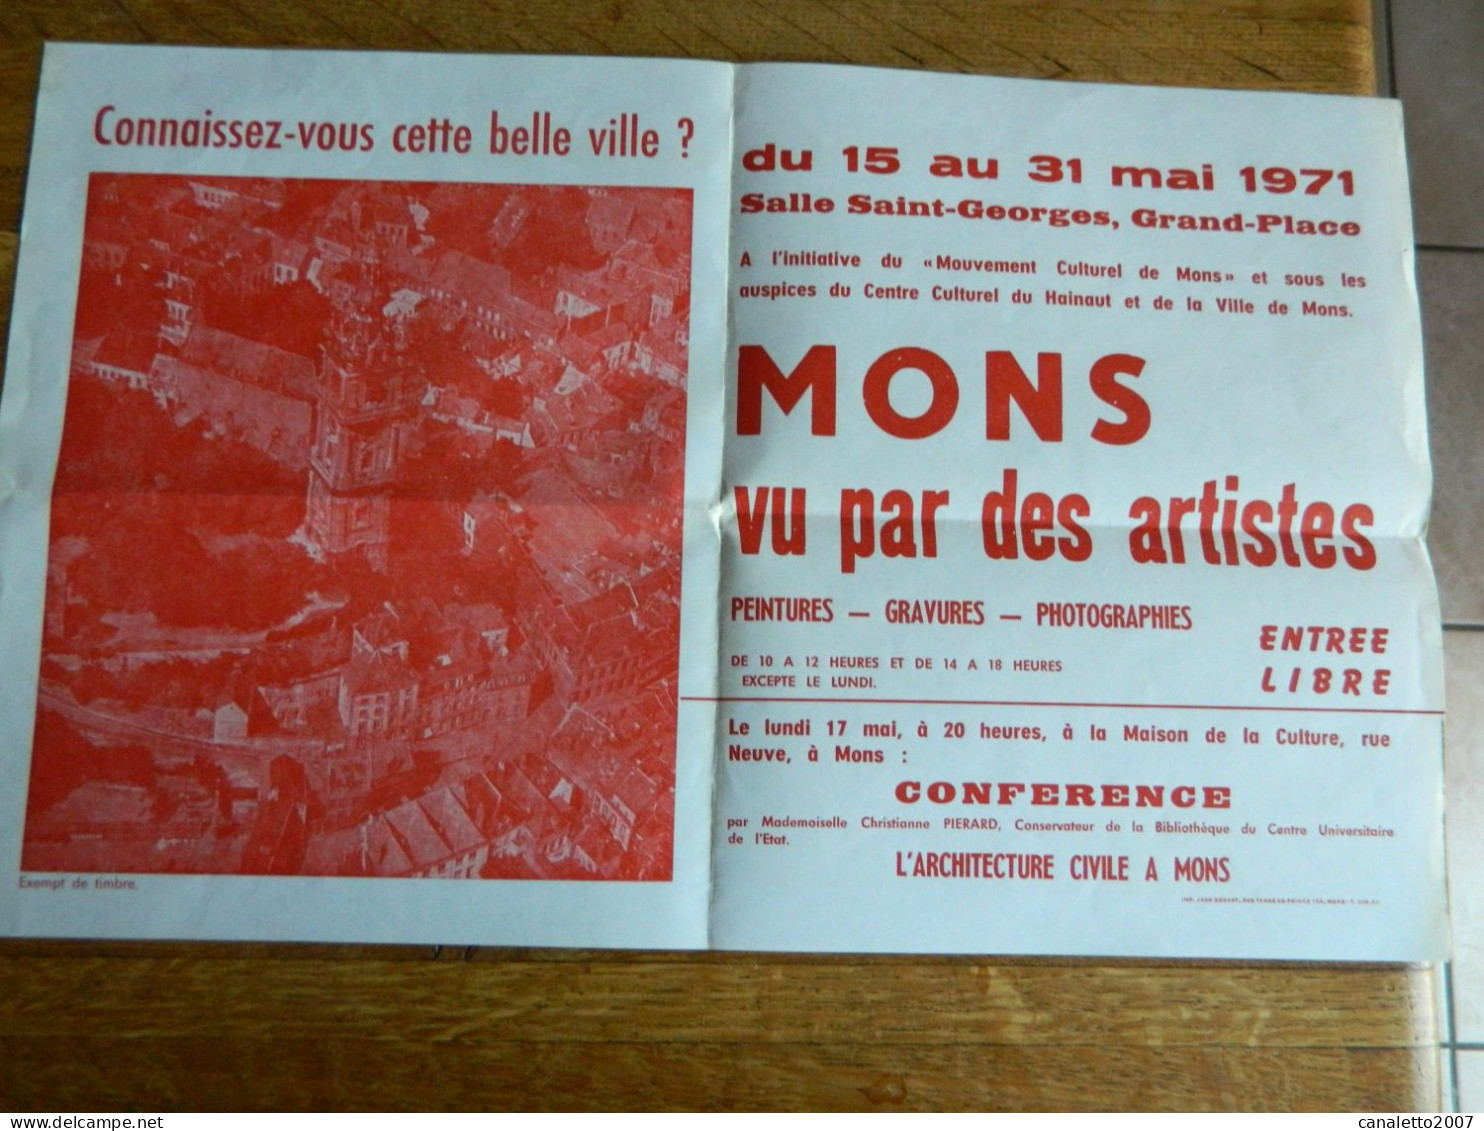 MONS: AFFICHE DE L'EXPOSITION MONS VU PAR DES ARTISTES SALLE ST GEORGES DU 15 AU 31 MAI 1971 - Affiches